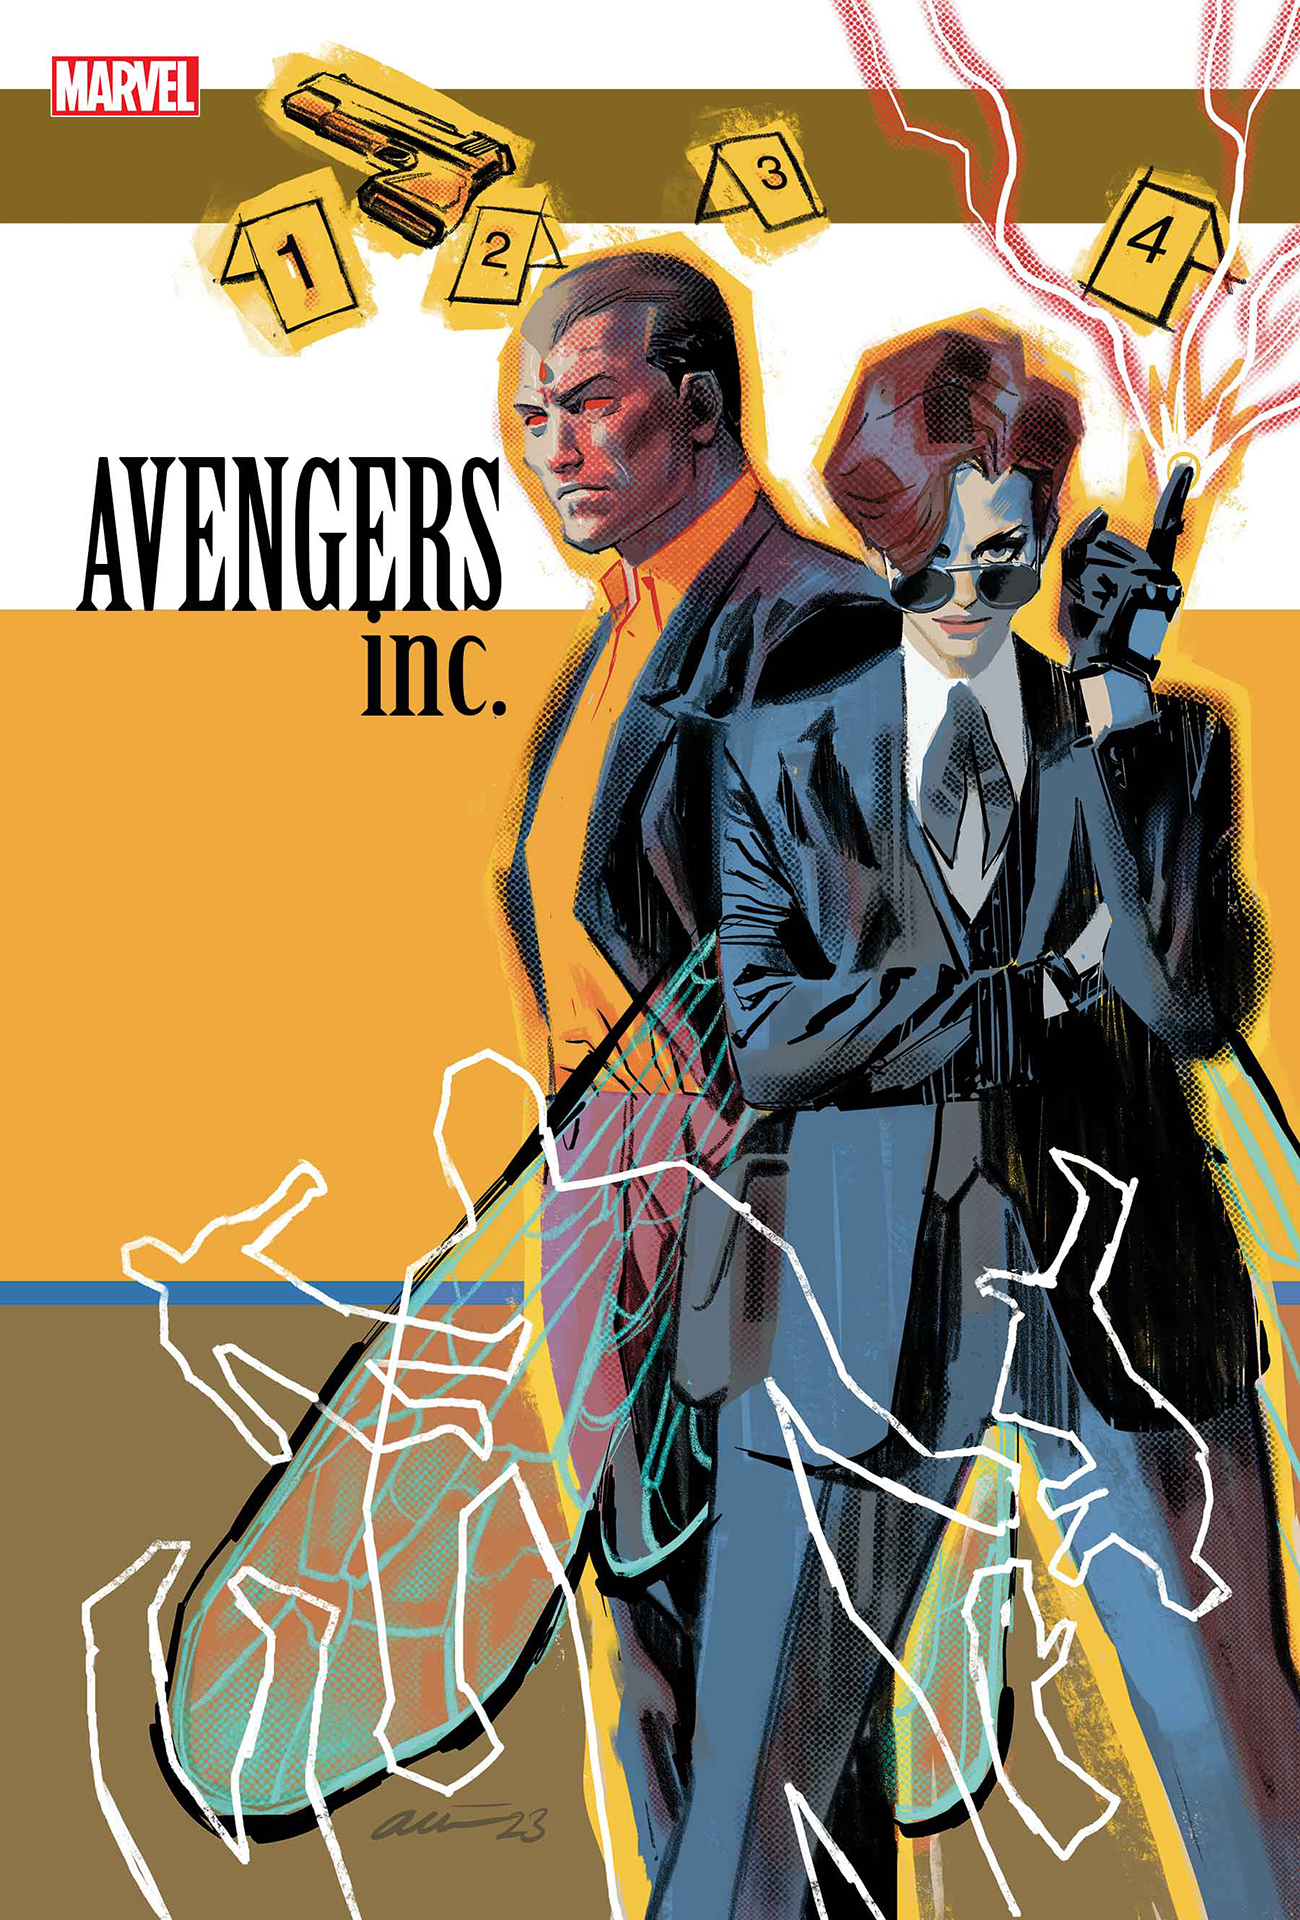 Avengers Inc. # 1 cover art